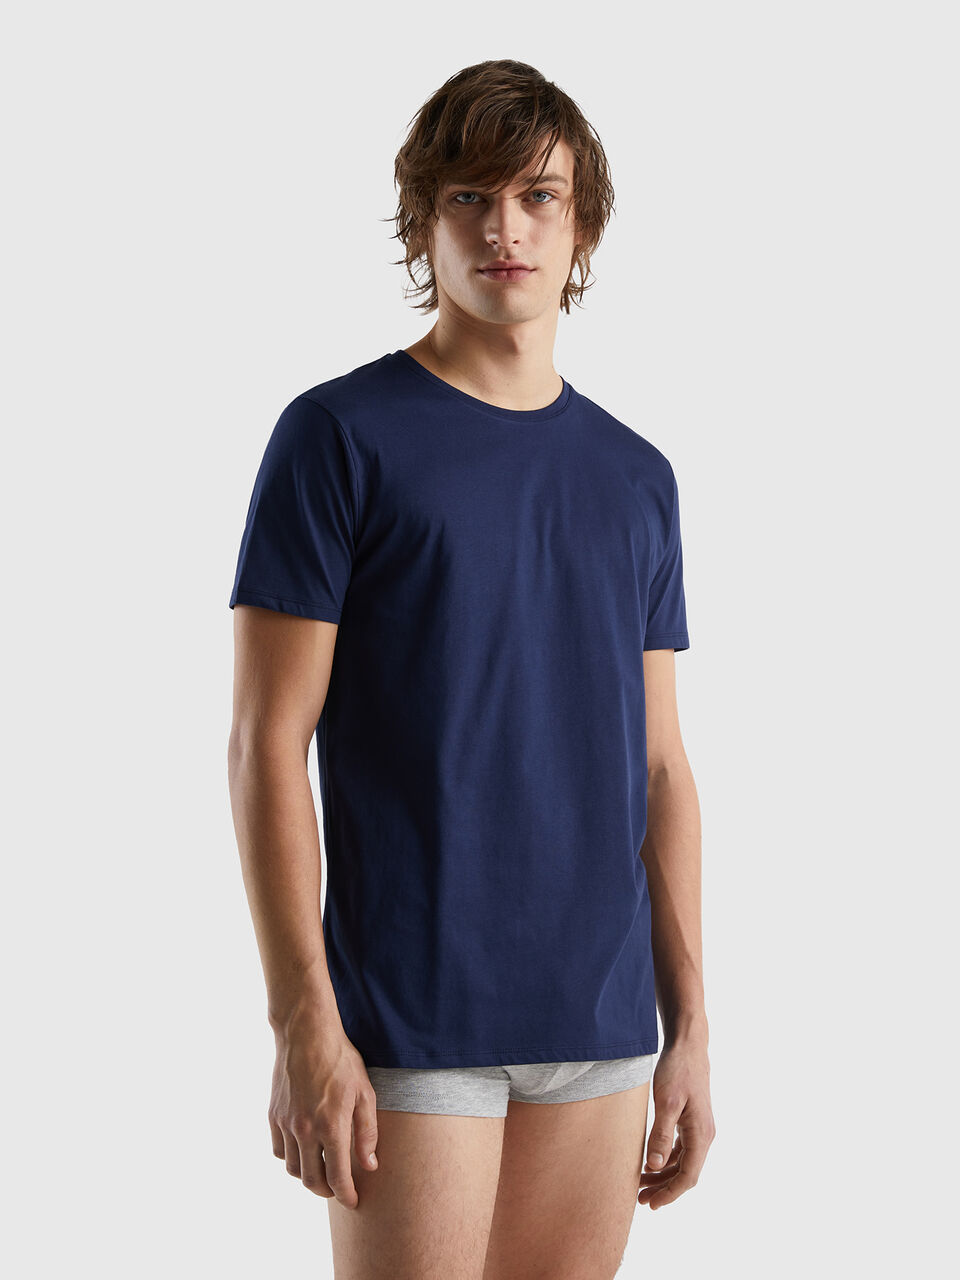 Long fiber | Blue - Benetton cotton t-shirt Dark